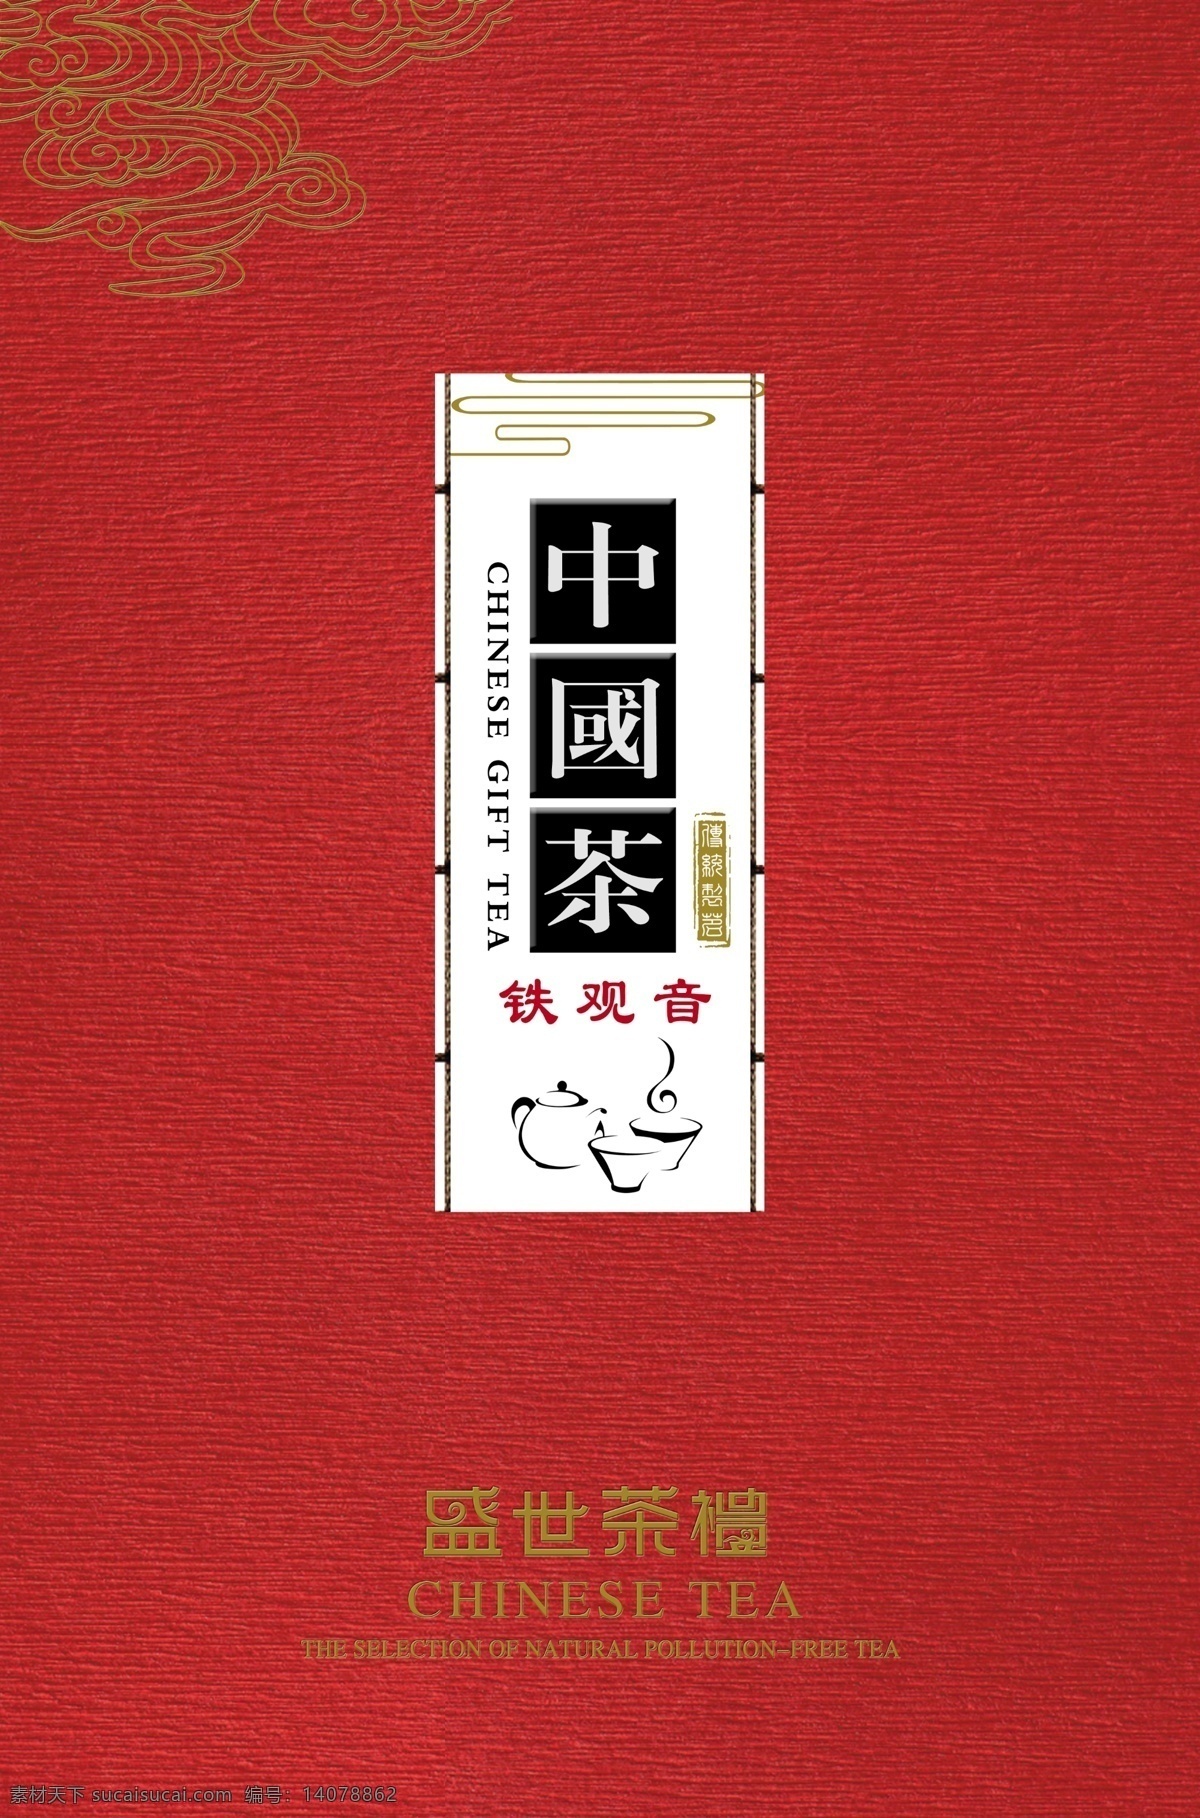 茶叶 包装 展开 图 中国茶 艺术纸 特种纸 包装盒 红色包装 psd源文件 展开图 茶叶包装 包装设计